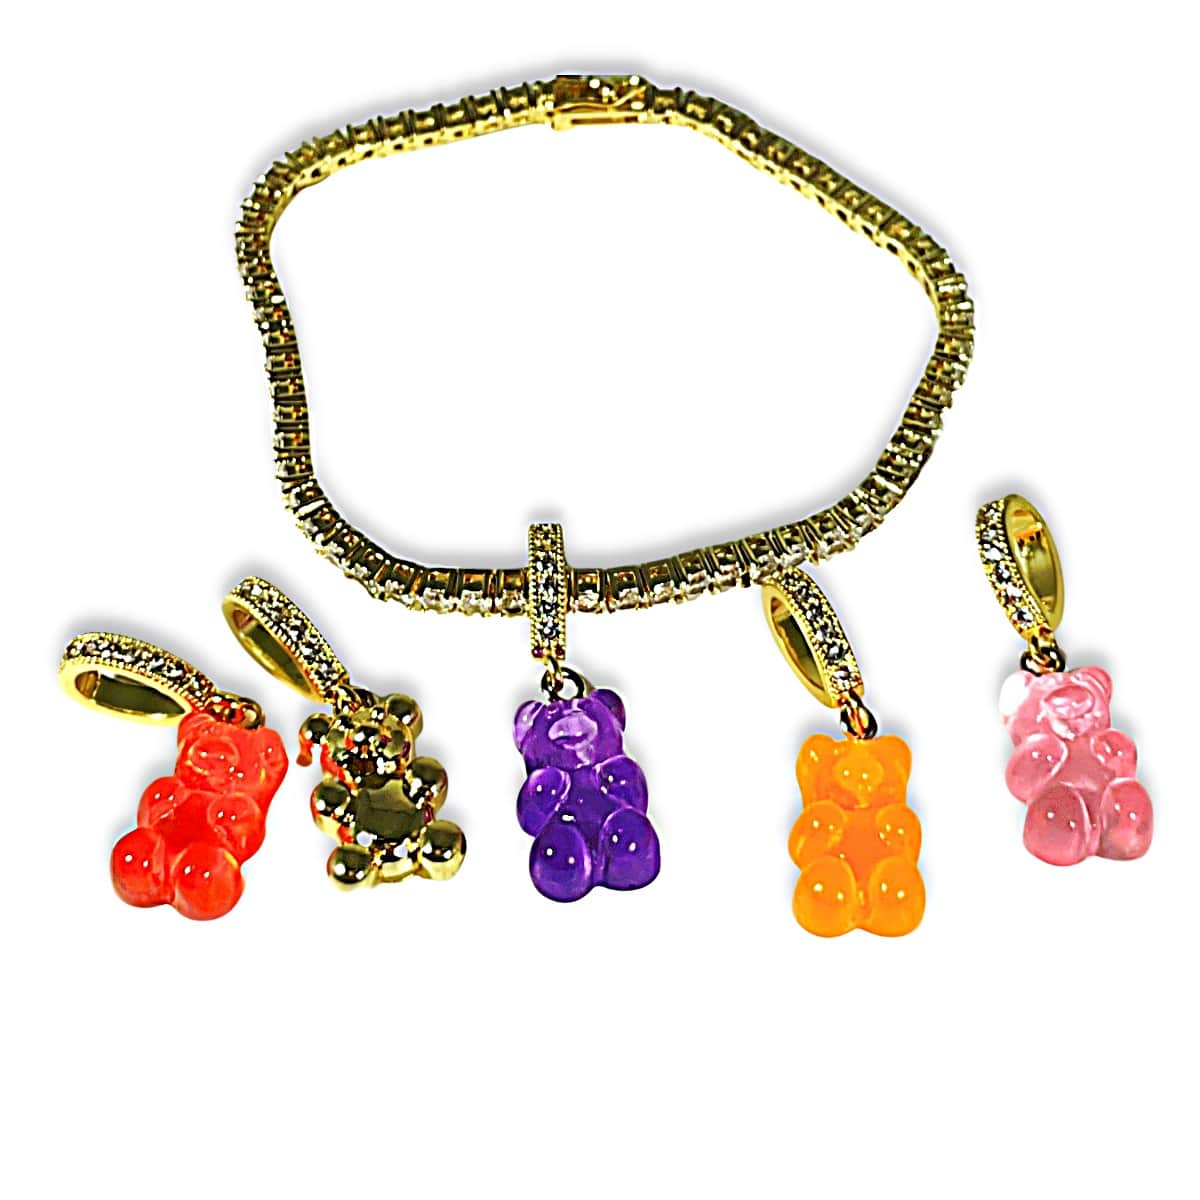 18k Gold Gummy Bear Bling Bracelet With Multiple Gummy Bear Pendant Charms - Gummy Bear Bling